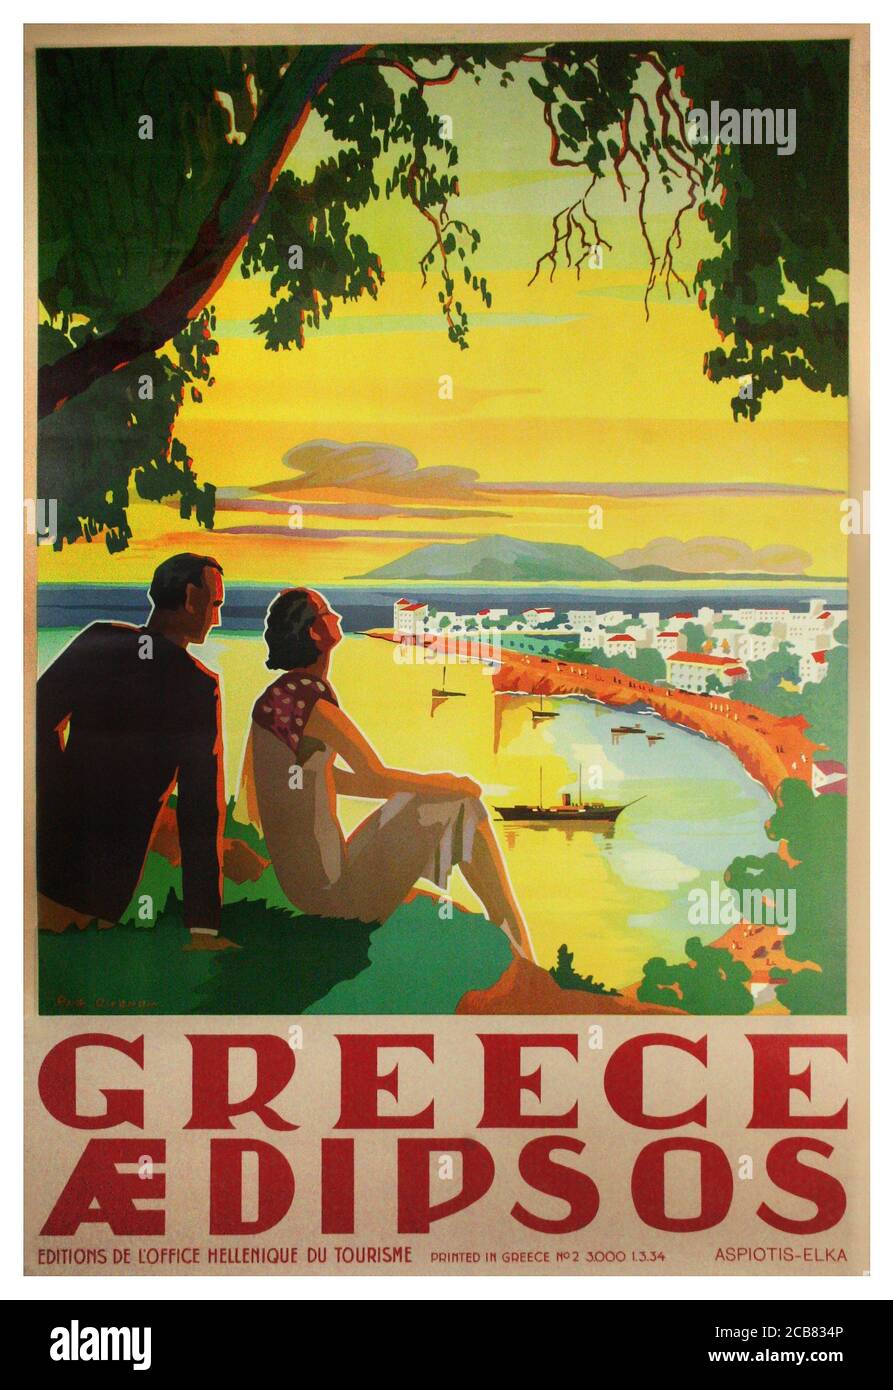 Années 1930 la Grèce antique affiche touristique grec Aedipsos Europe européenne Vintage Affiche de publicité de voyage de l'Office hellénique du tourisme Banque D'Images